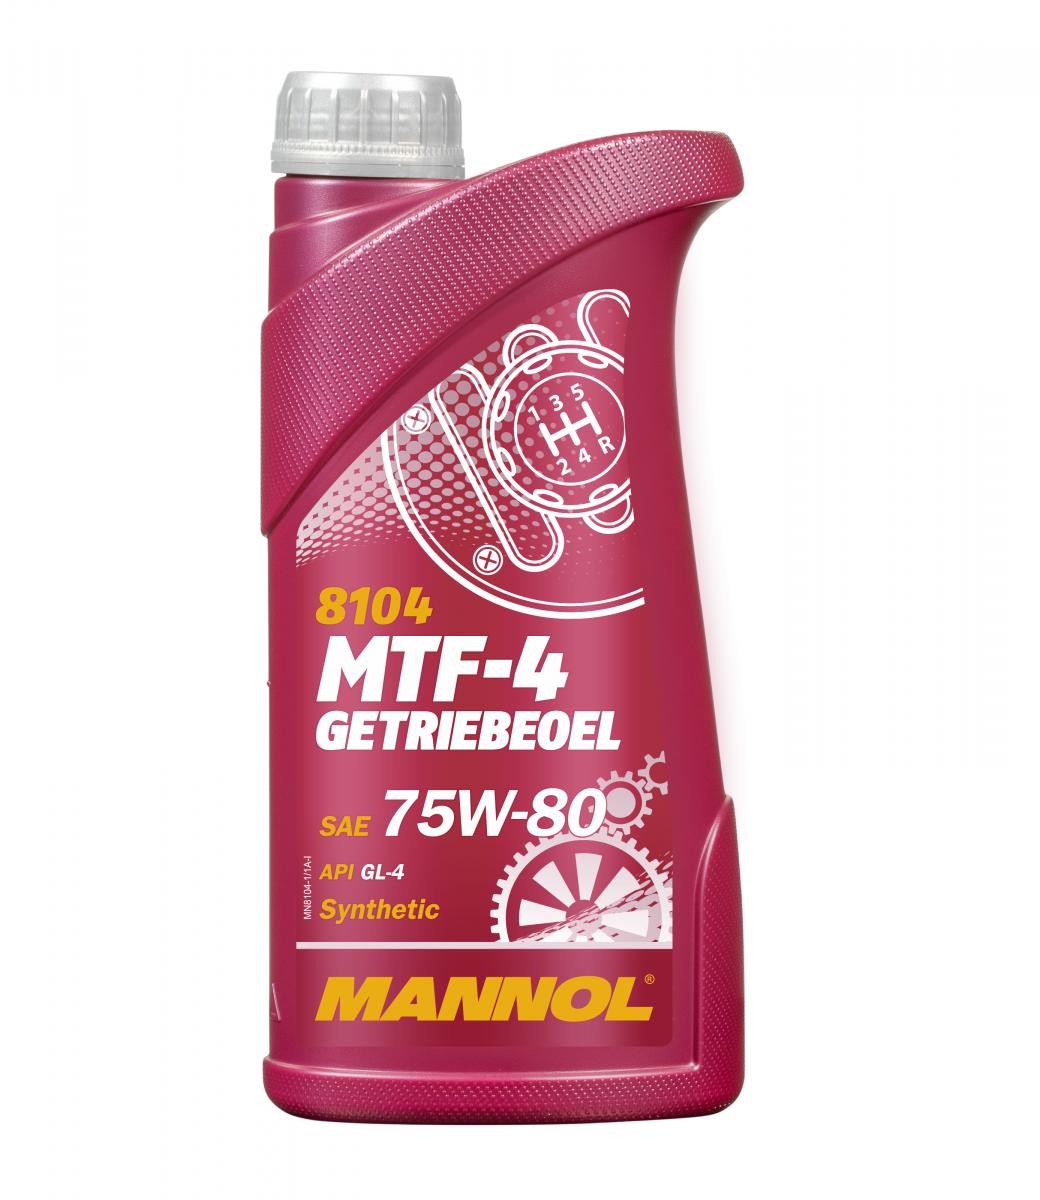 MANNOL MTF-4, GL-4 MN8104-1 PUCH Getriebeöl Motorrad zum günstigen Preis